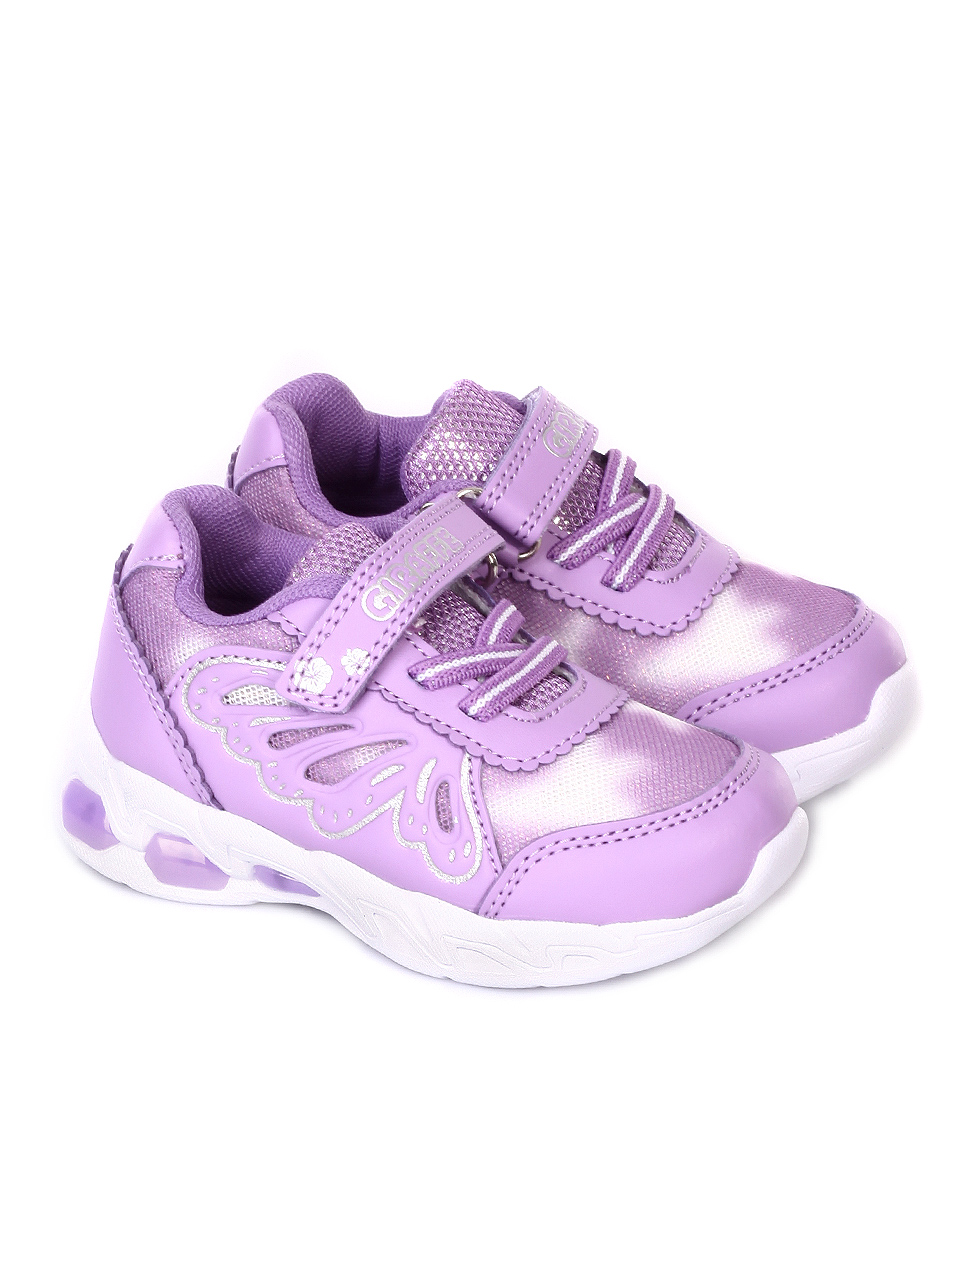 Детски обувки със светещи елементи в лилаво 18K-19226 purple